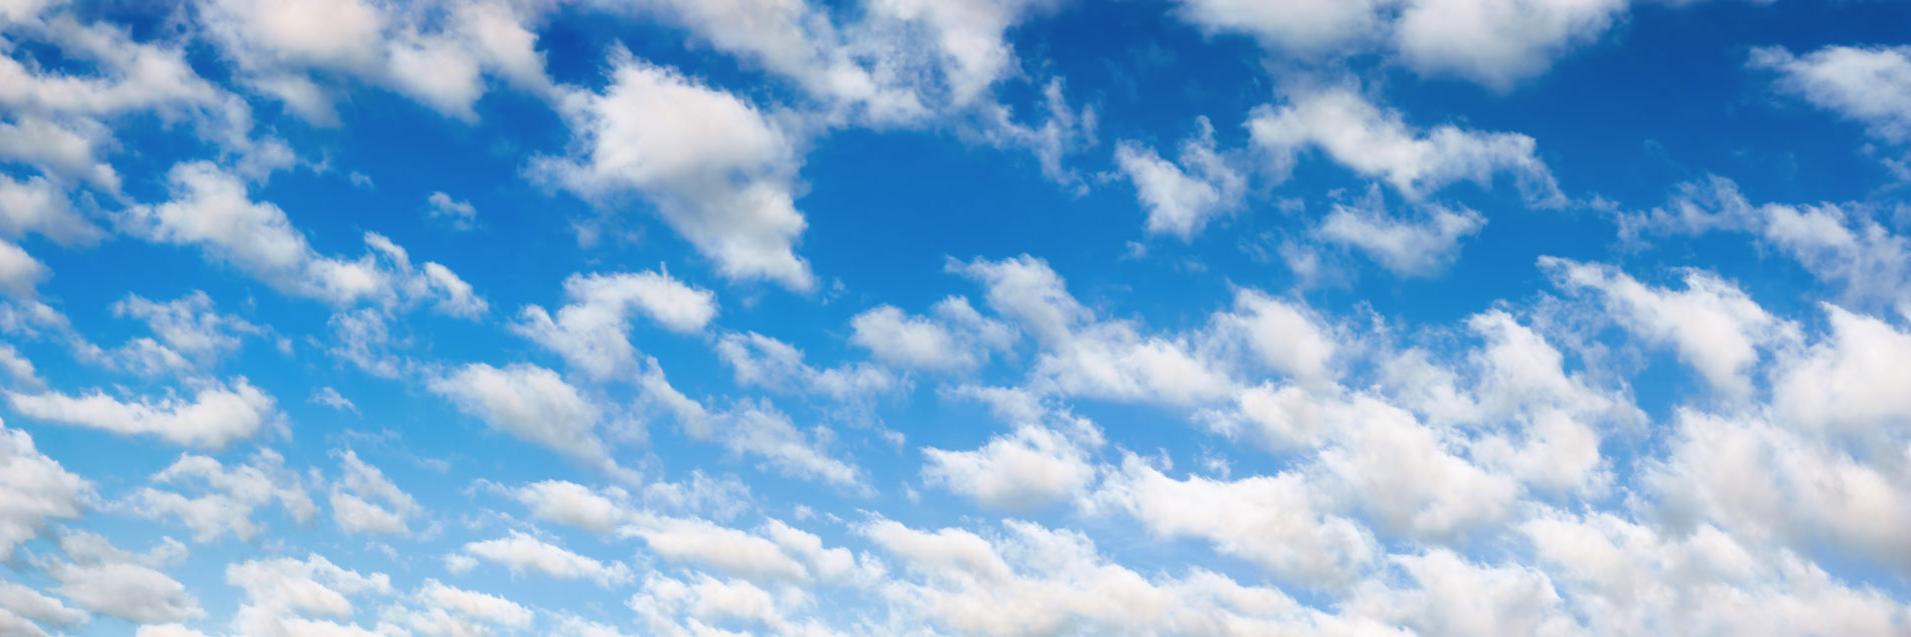 nuages blancs floconneux sur ciel bleu panorama